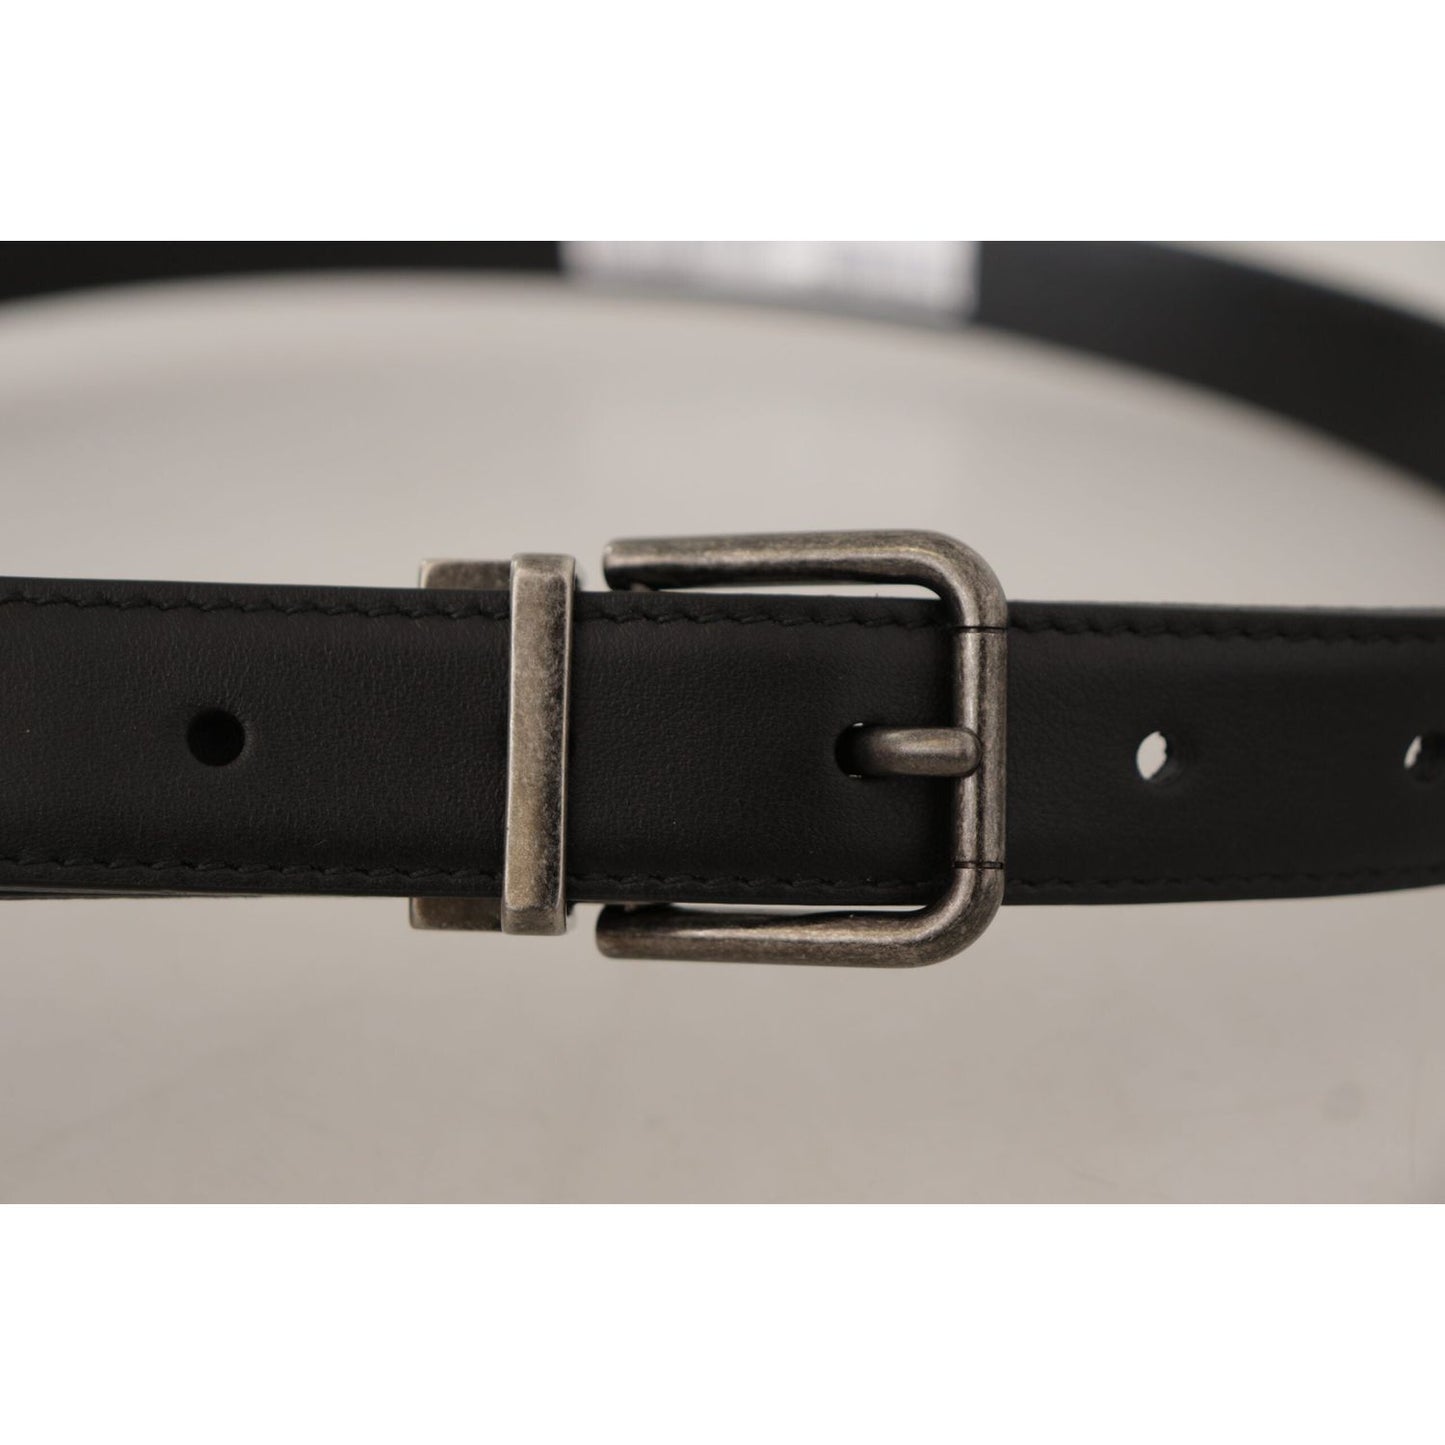 Dolce & Gabbana Elegant Black Leather Belt with Metal Buckle black-plain-leather-vintage-logo-metal-buckle-belt